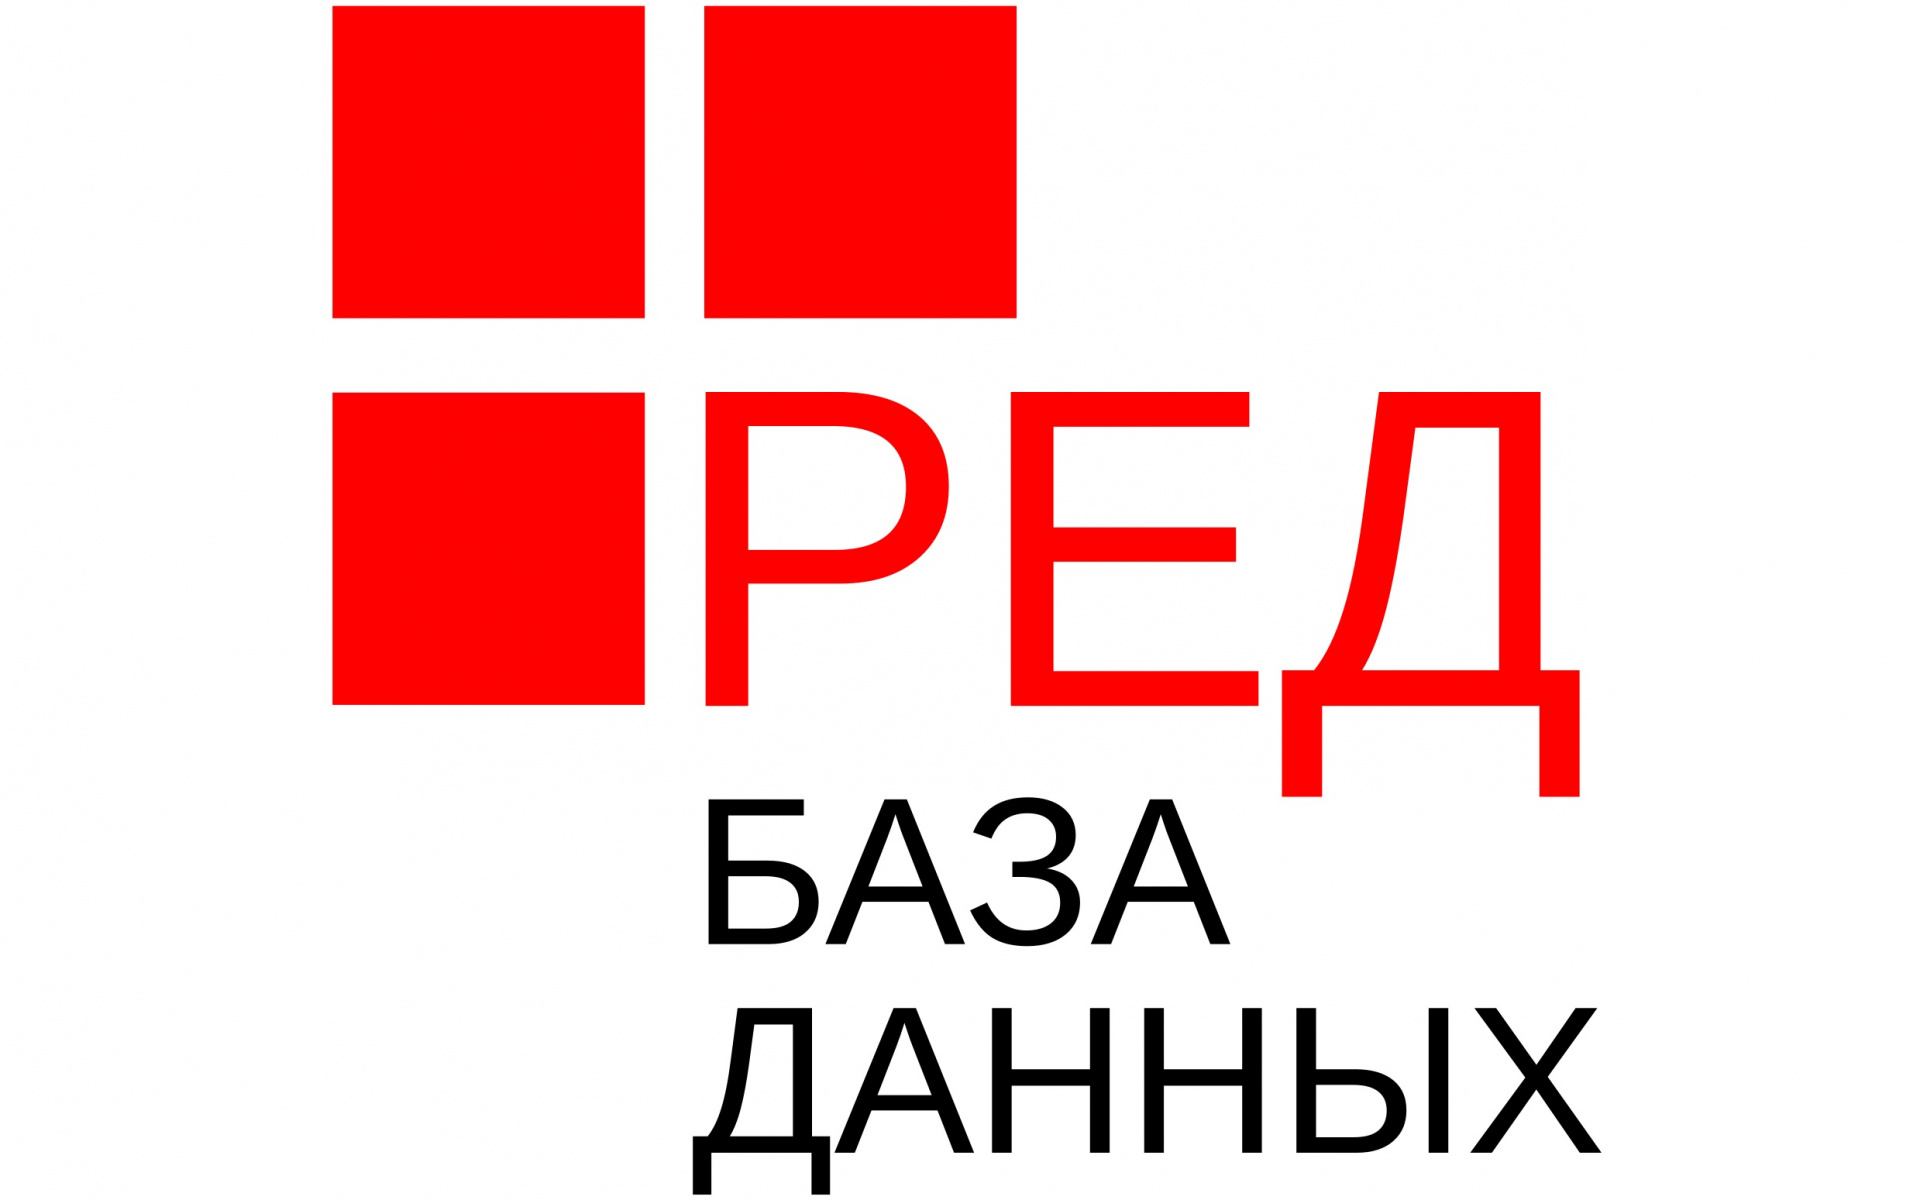 ФСТЭК России провела оценку по уровням доверия и подтвердила сертификат СУБД Ред База Данных